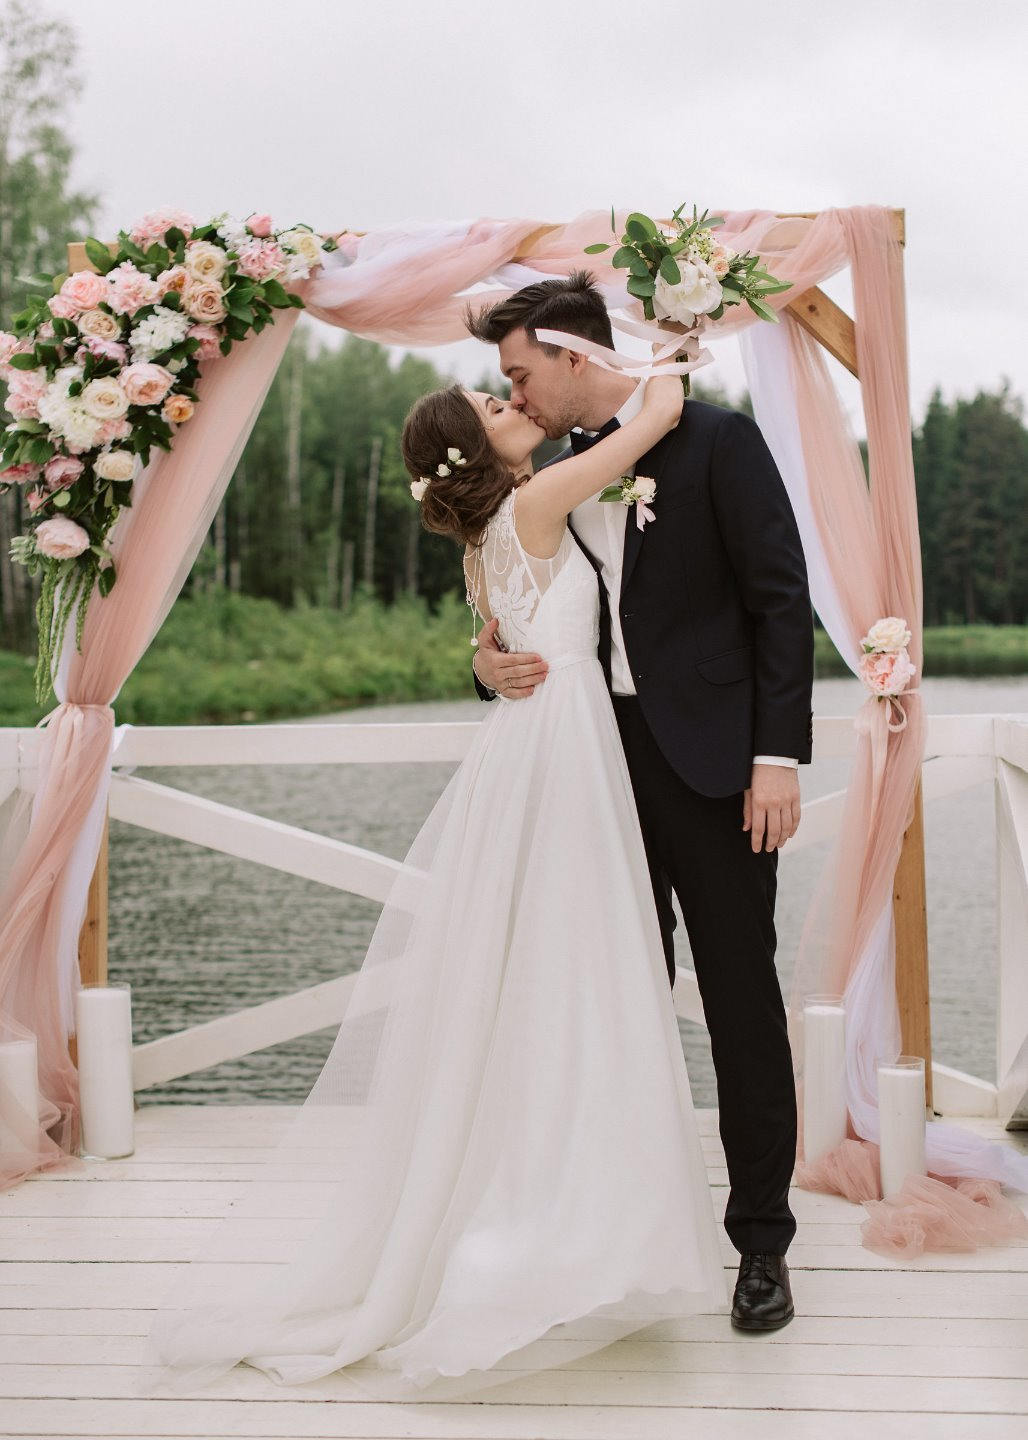 Утонченная романтика: загородная свадьба в розовом цвете